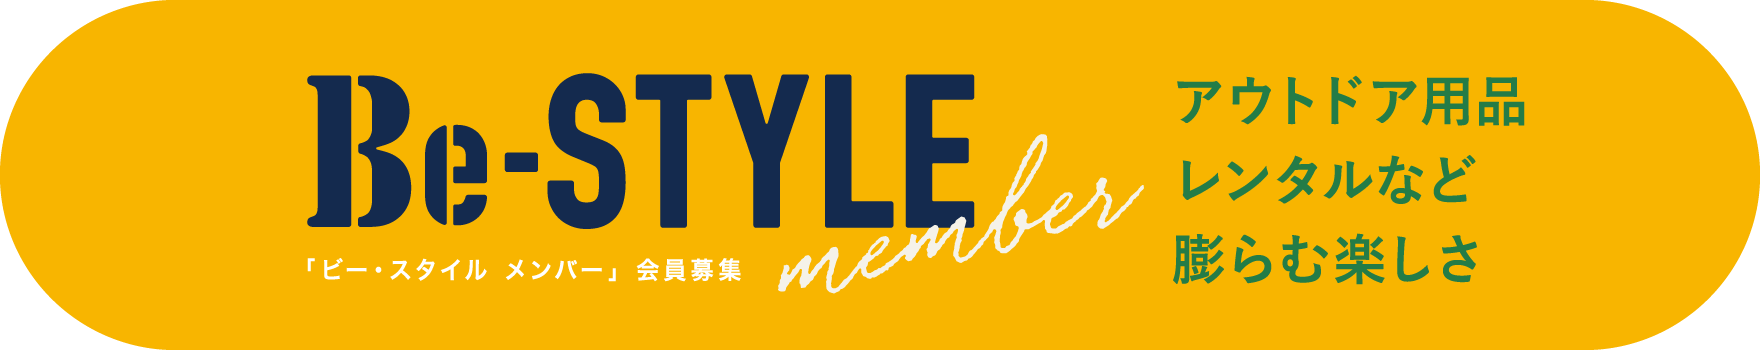 Be-STYLE 「ビー・スタイル メンバー」 会員募集